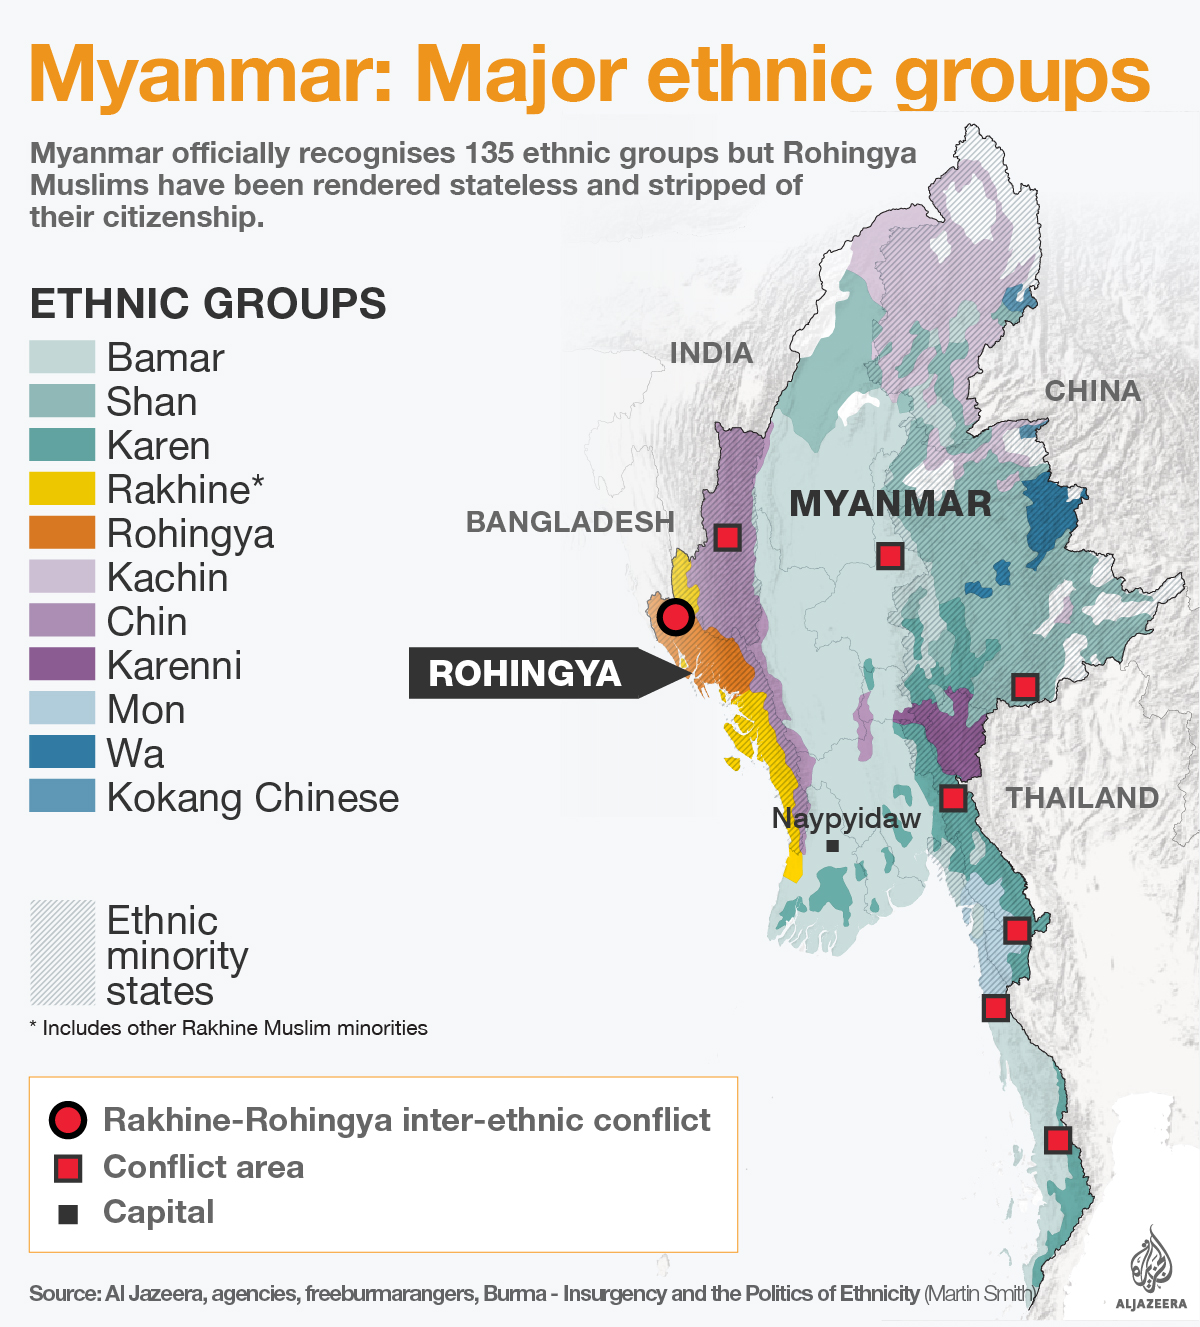 rohingya ethnic minorities myanmar infographic [Al Jazeera]